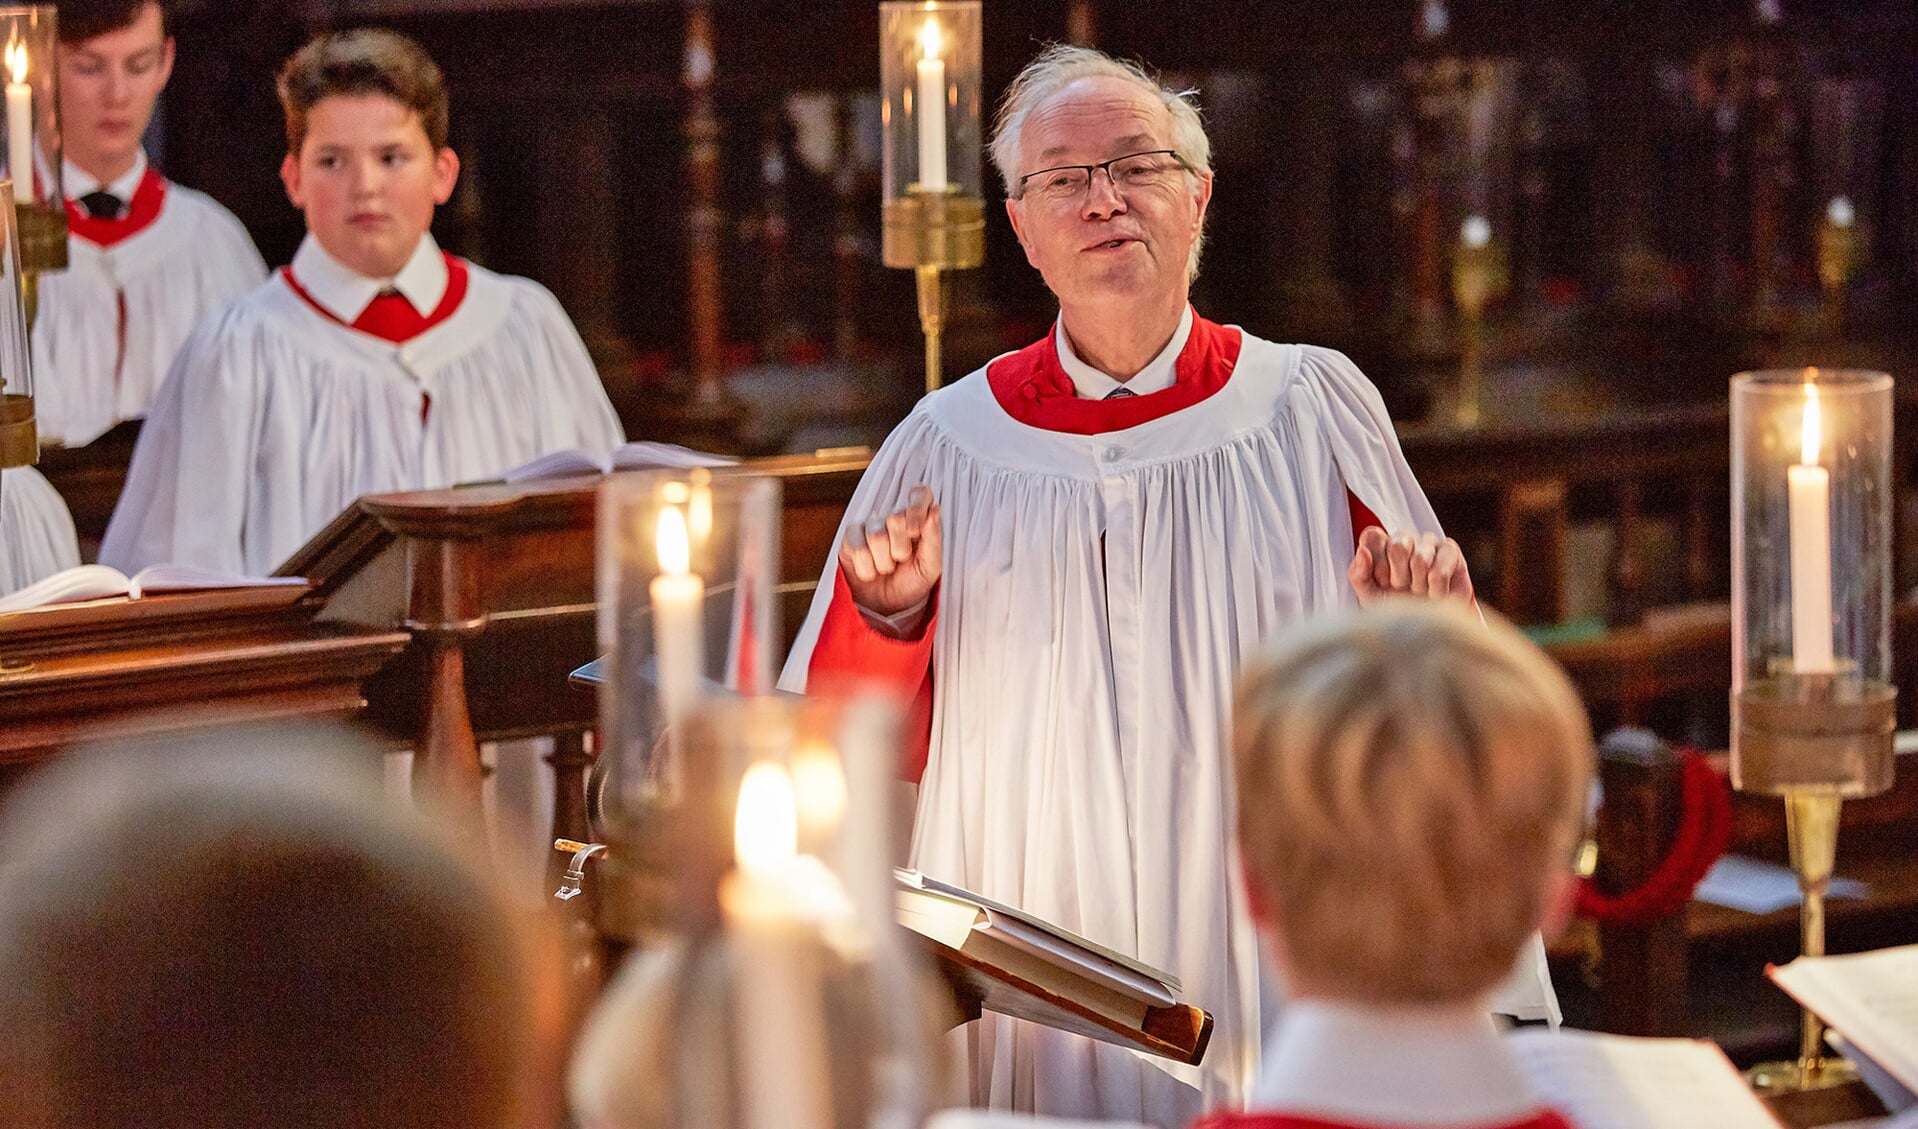 Het King’s College Choir in Cambridge geeft elk jaar een componist de opdracht om een nieuwe carol te componeren.